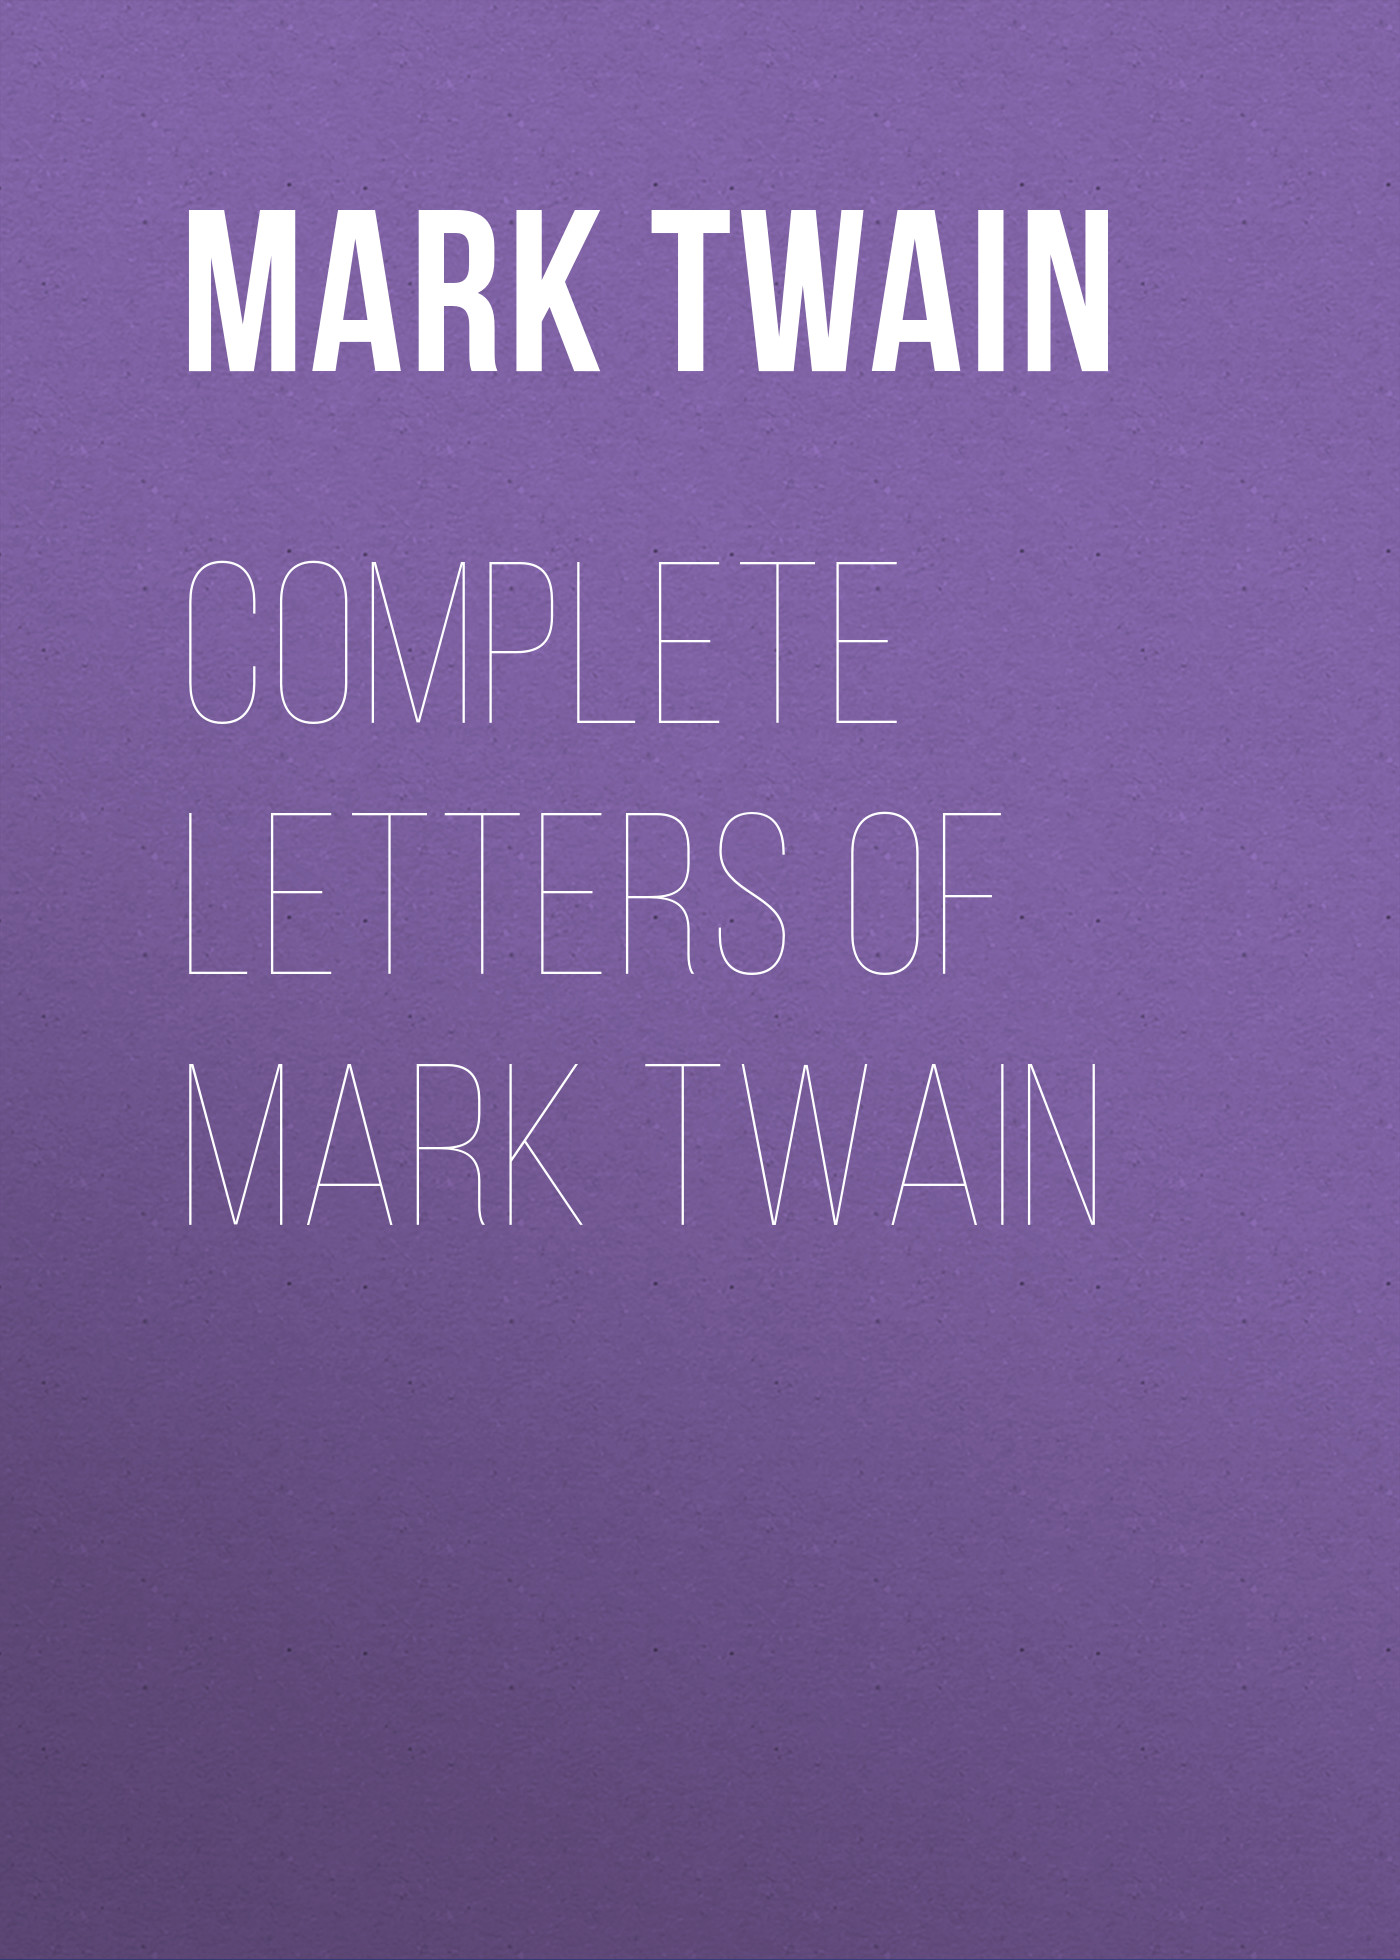 Книга Complete Letters of Mark Twain из серии , созданная Марк Твен, может относится к жанру Зарубежная классика. Стоимость электронной книги Complete Letters of Mark Twain с идентификатором 9366868 составляет 29.95 руб.